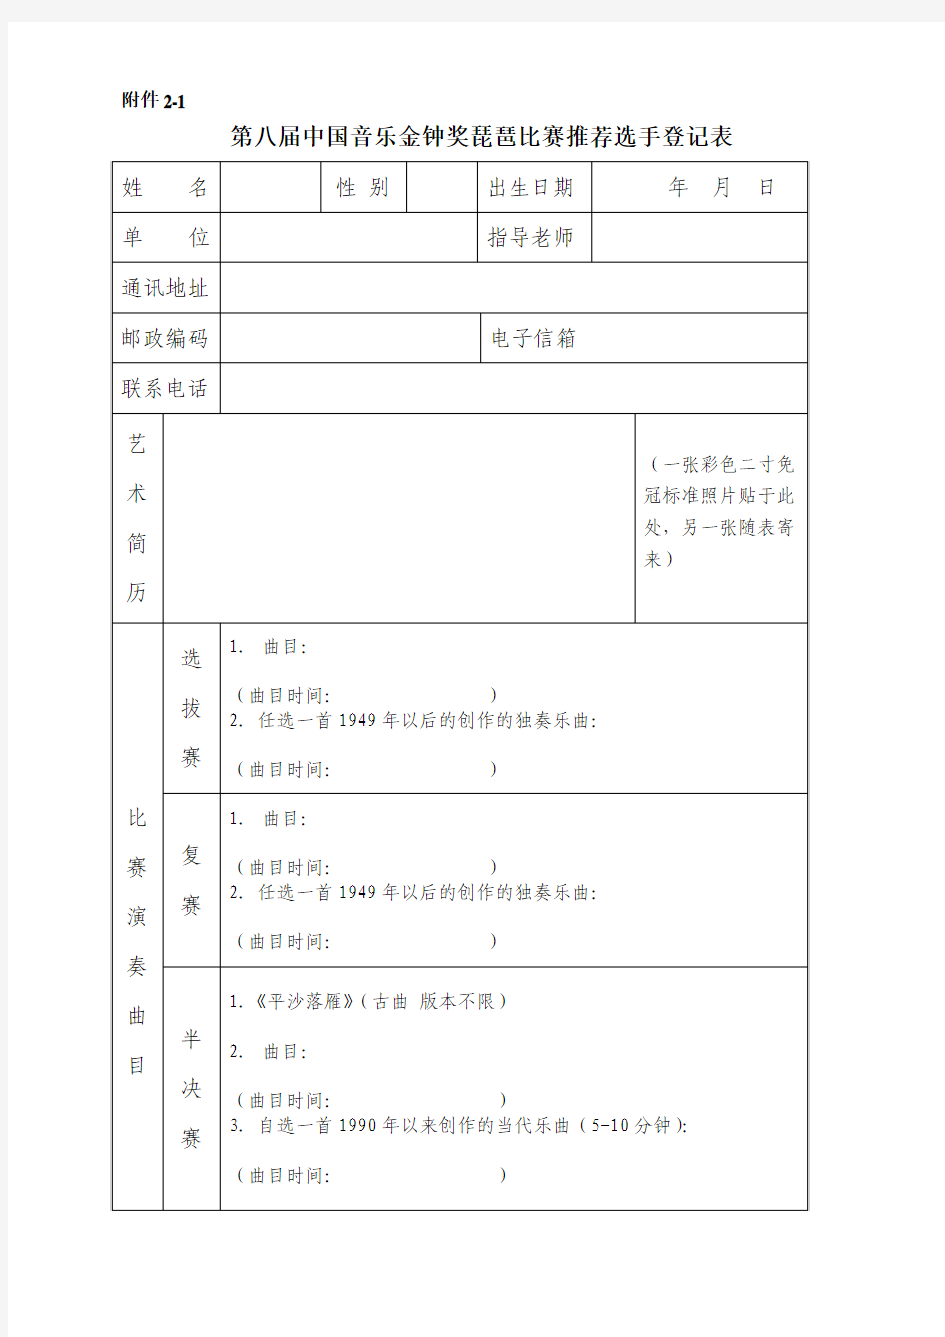 第八届中国音乐金钟奖琵琶比赛推荐选手登记表